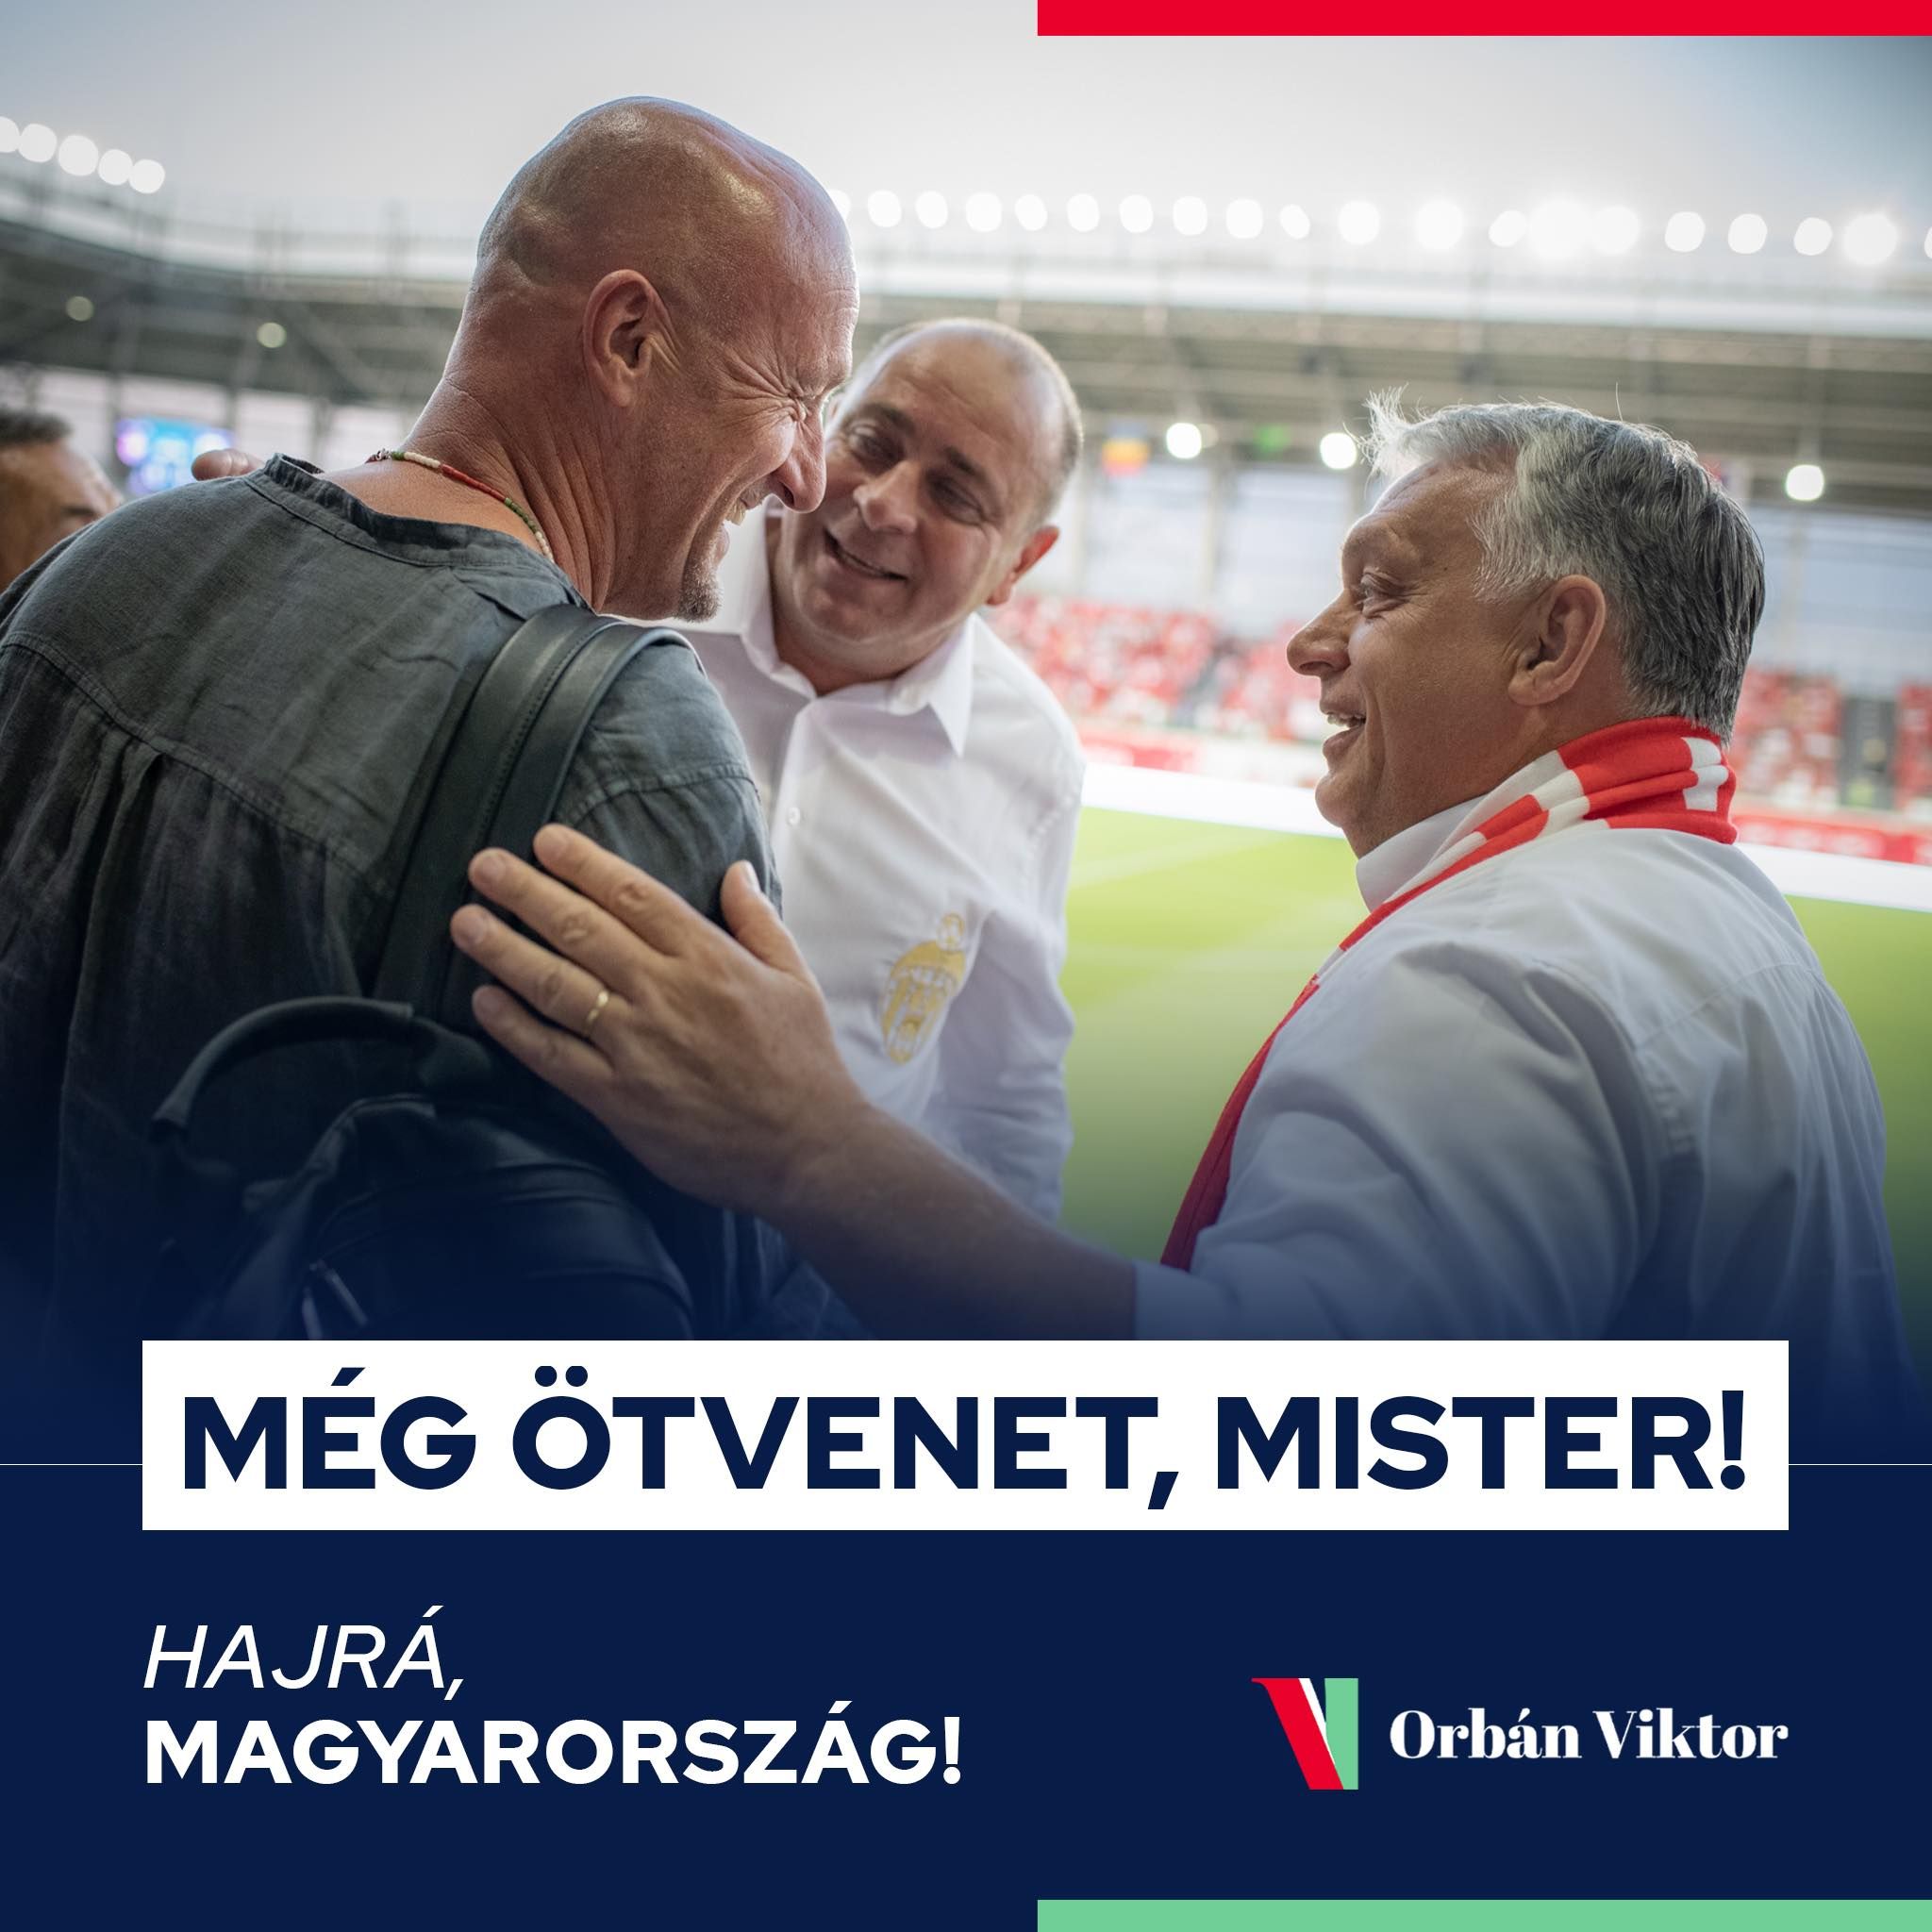 Marco Rossinak üzent Orbán Viktor: "Még ötvenet, Mister"